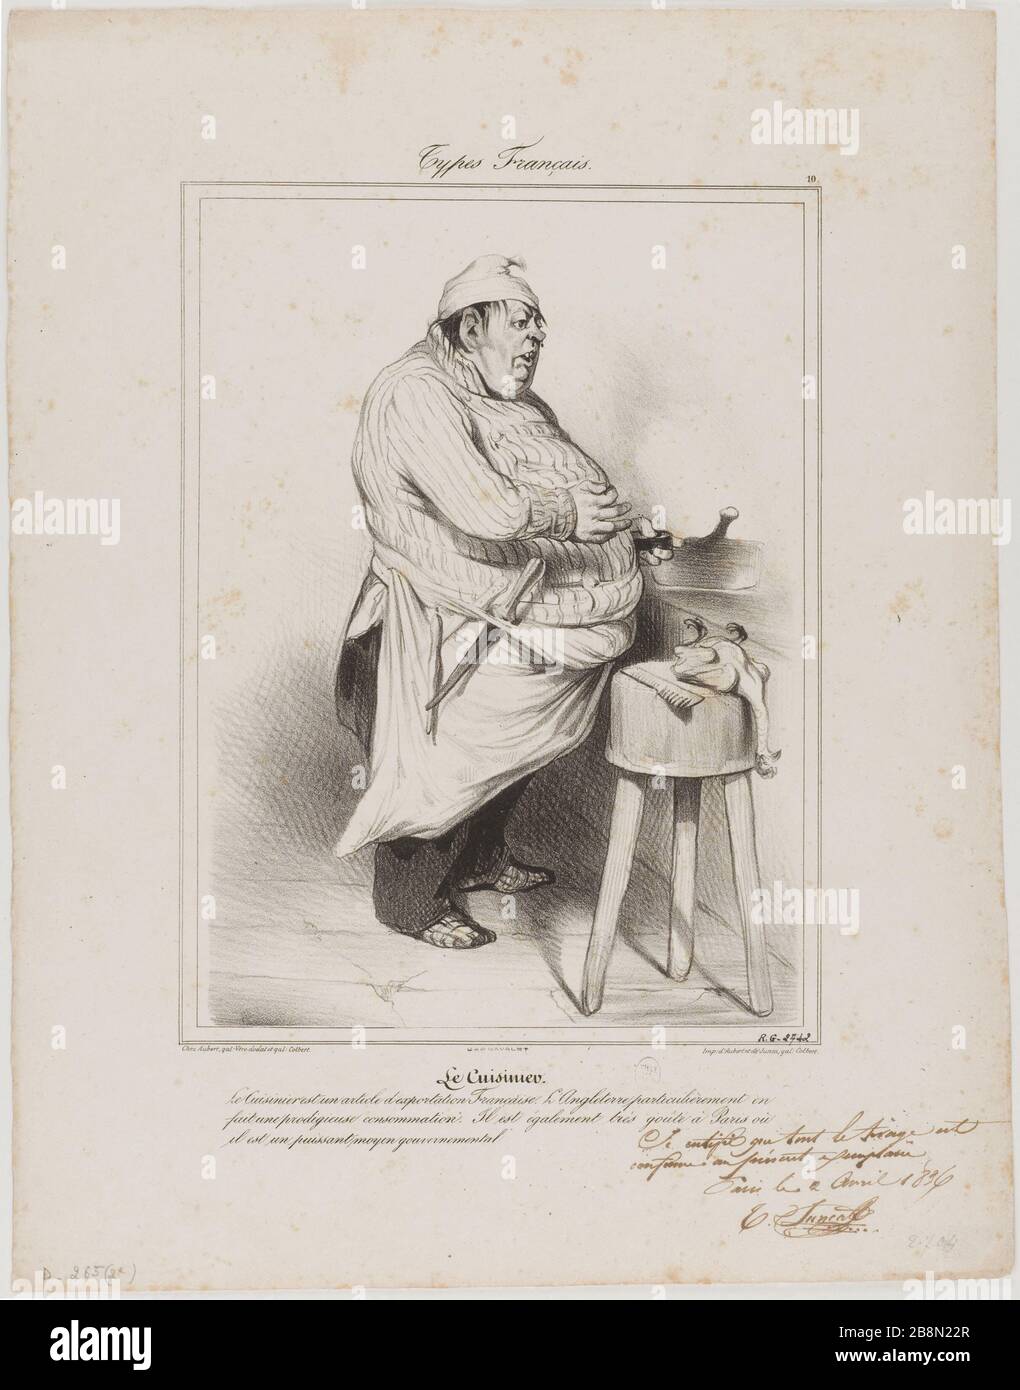 Typen französischer 'Koch' (Platte 10) Honoré Daumier (1808-1879). "Typen Français 'le cuisinier' (Planche 10)". Lithographie. Paris, musée Carnavalet. Stockfoto